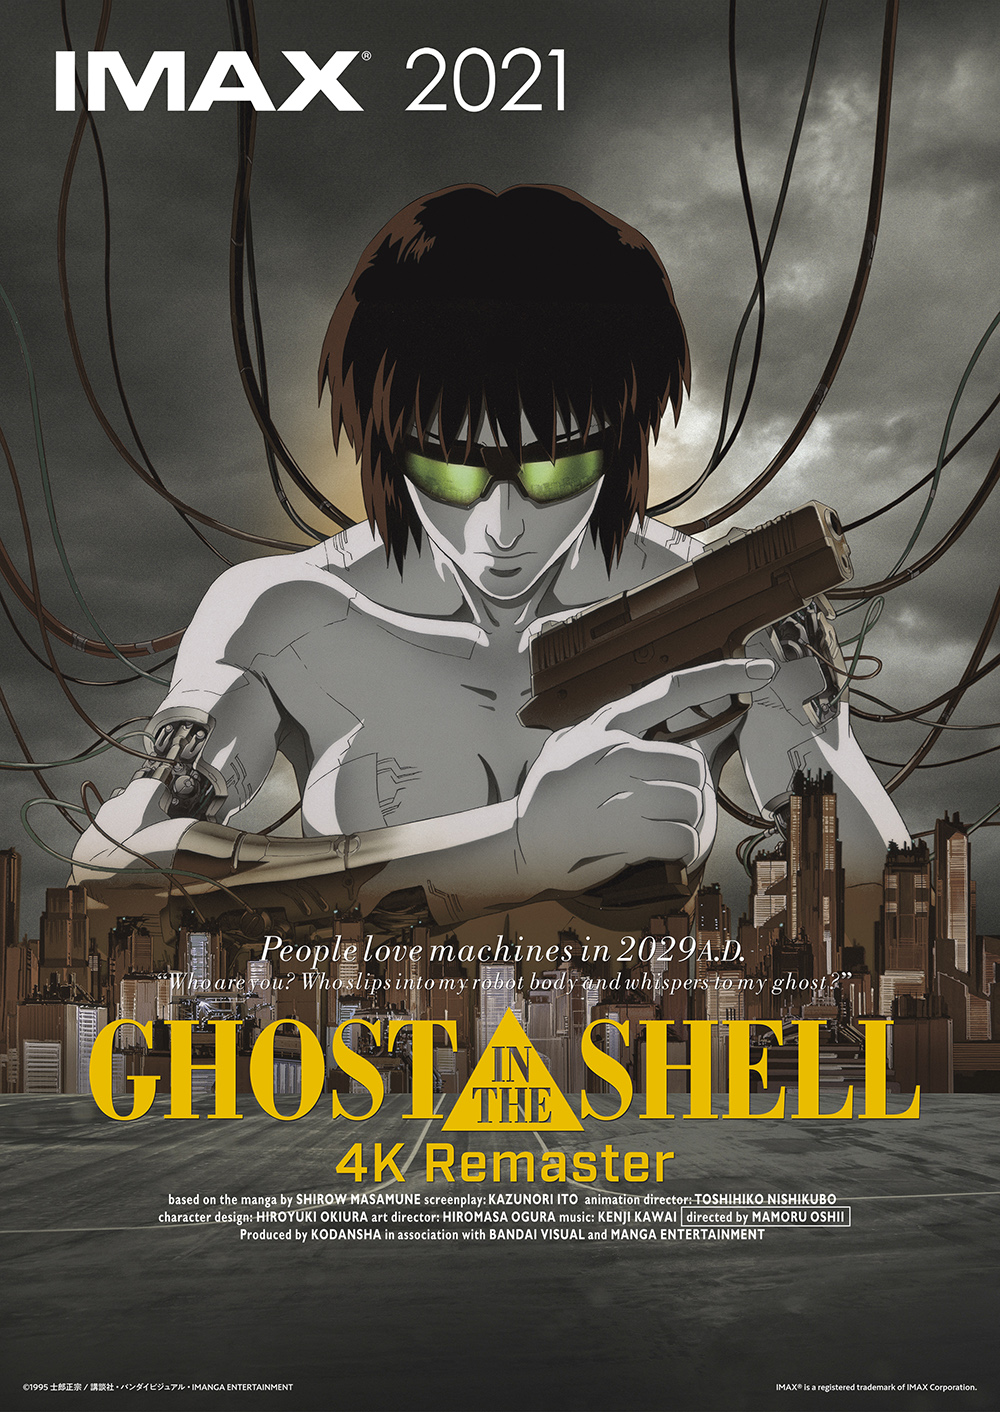 映画「GHOST IN THE SHELL/攻殻機動隊 4Kリマスター版 IMAX」が9月17日